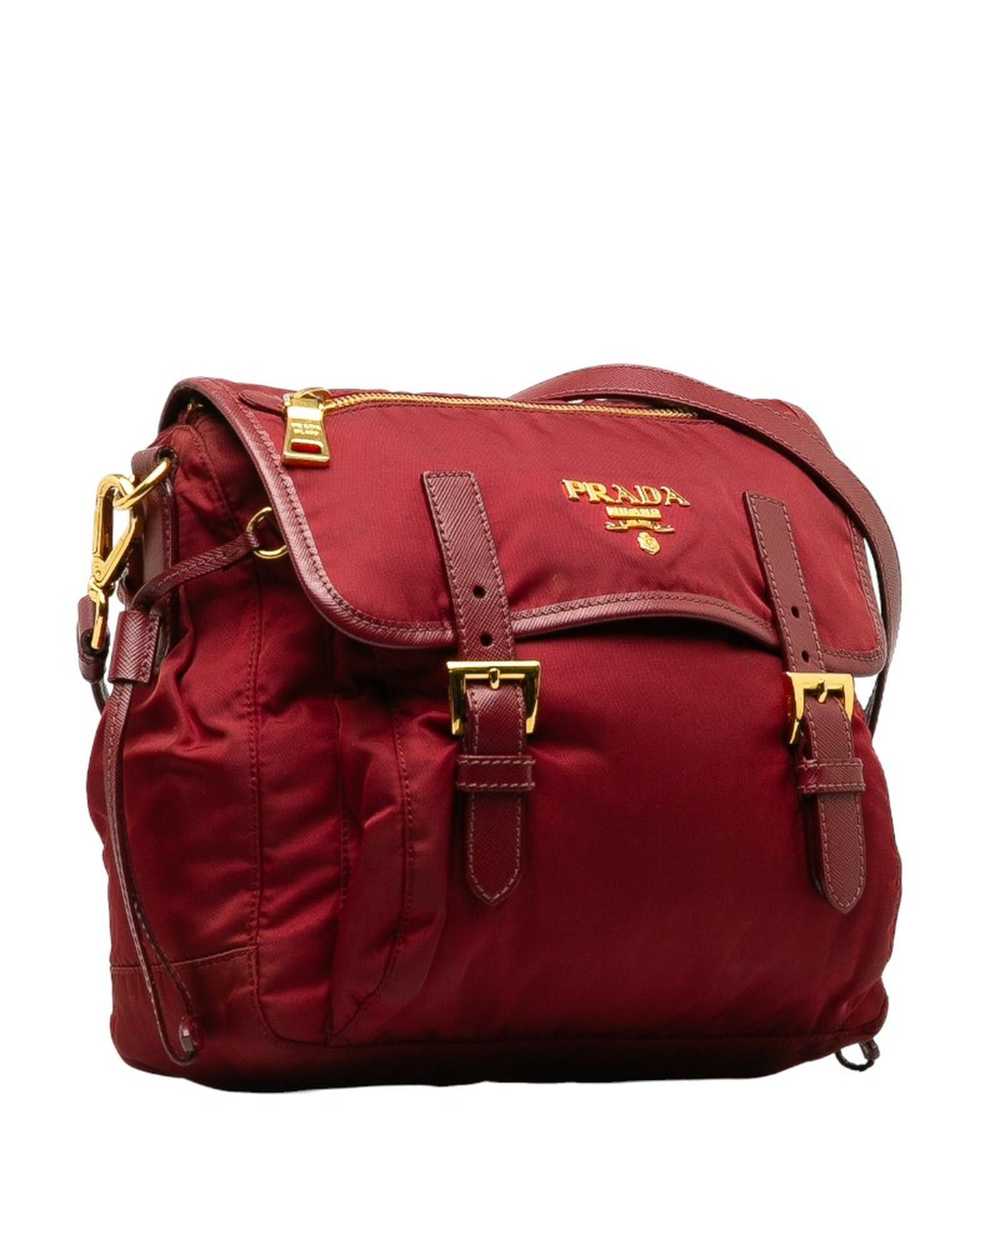 Prada Rose Gold Tessuto Messenger Bag in AB Condi… - image 2